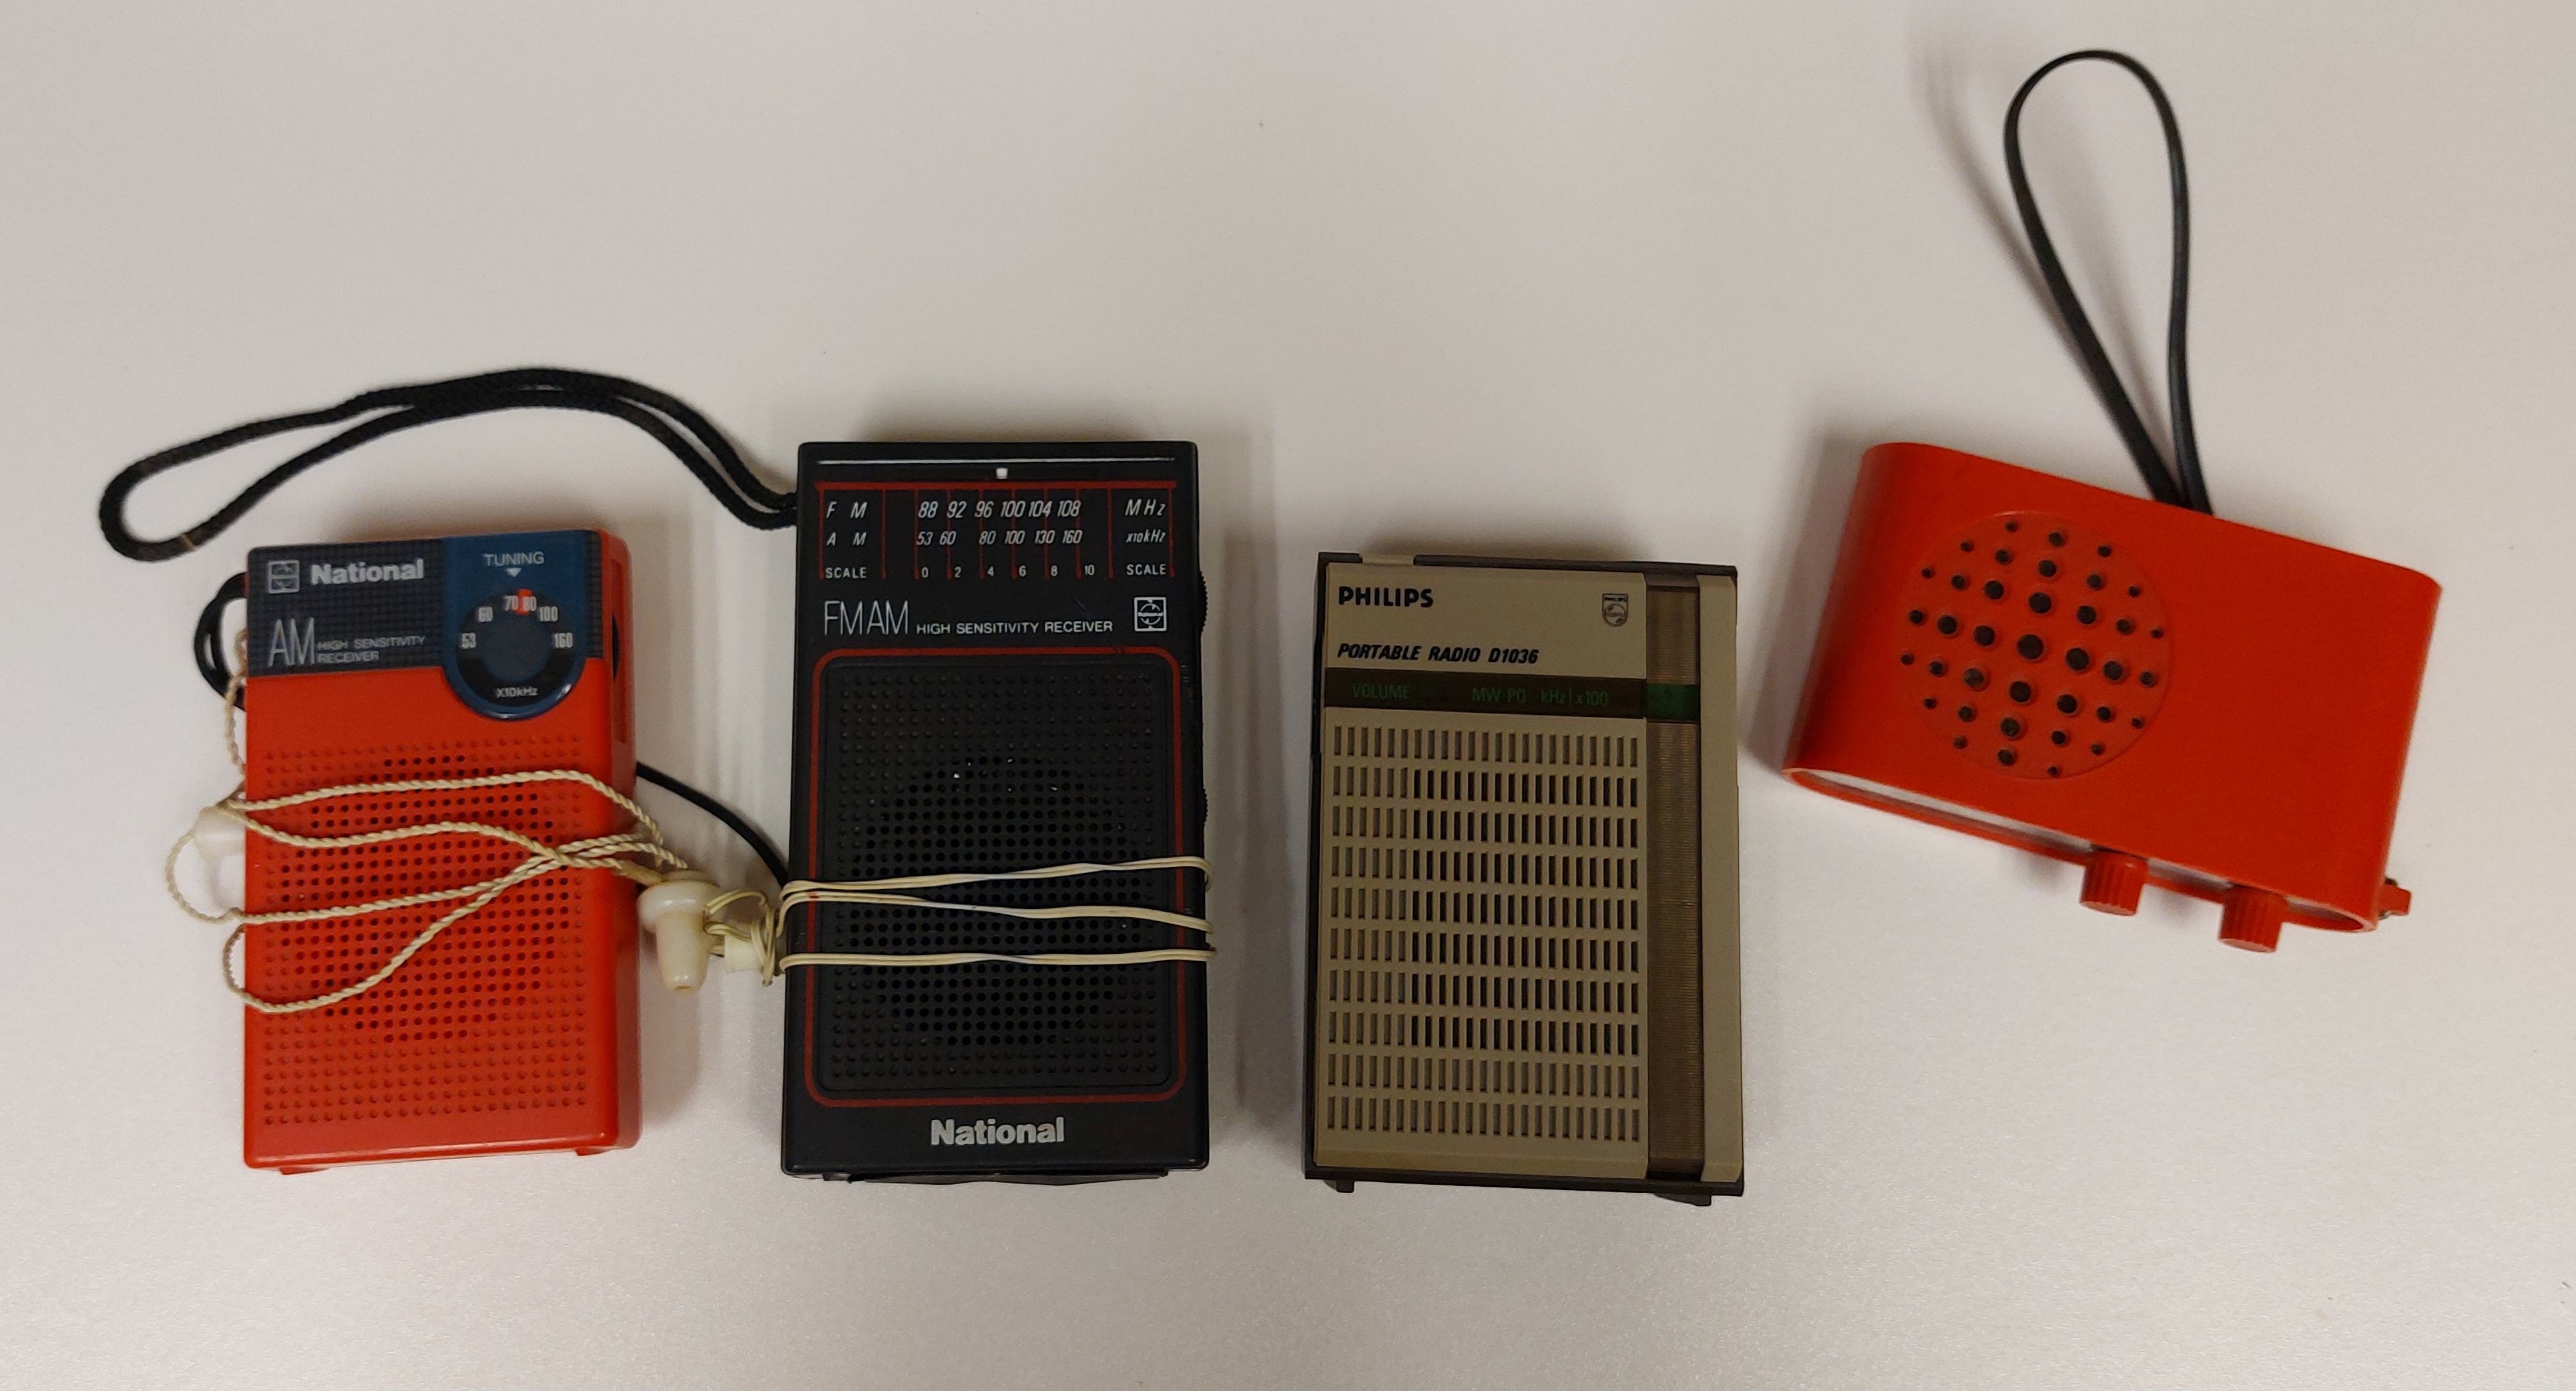 Radios used by prisoners in custody.